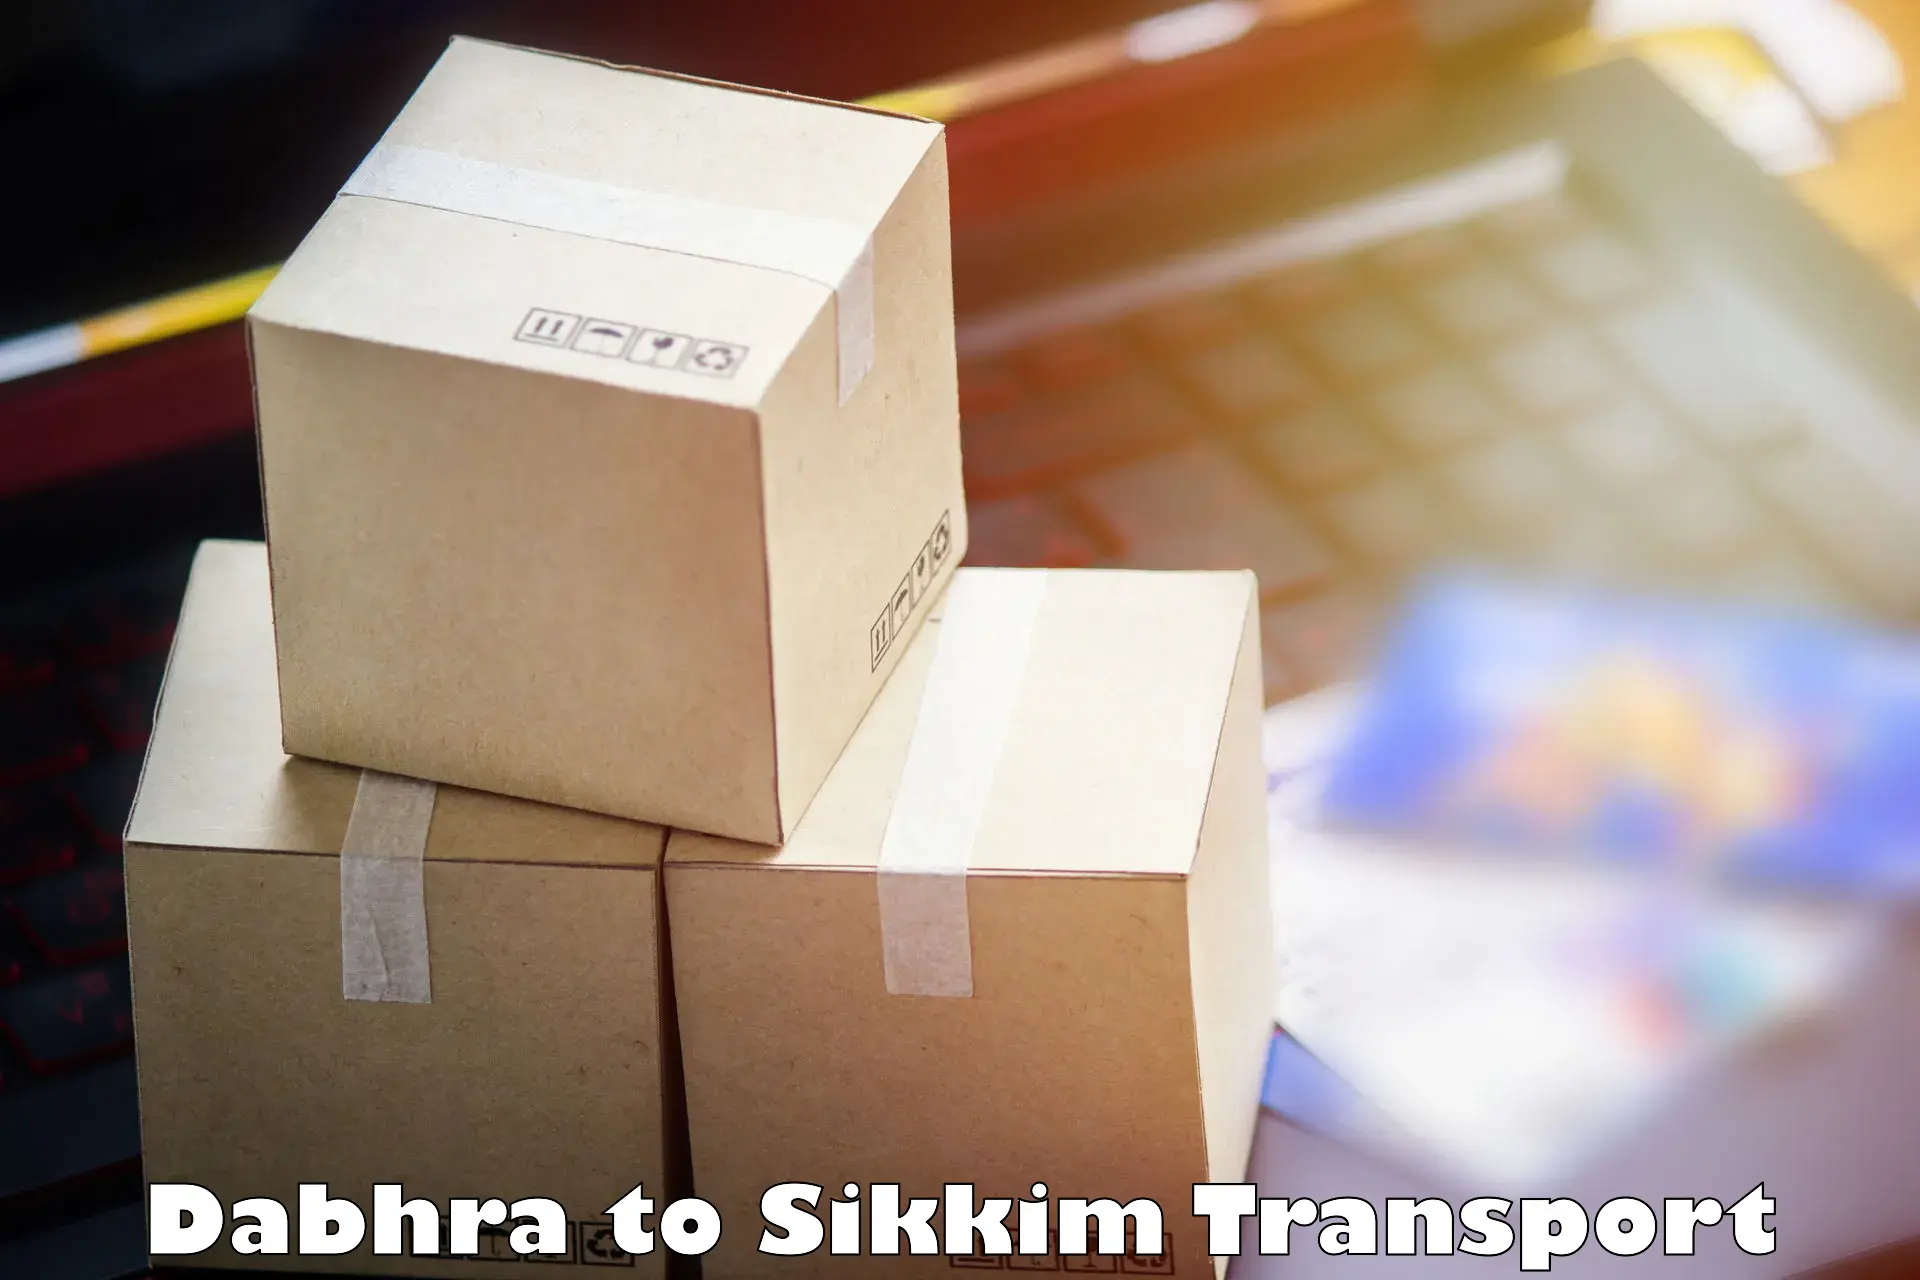 Transport in sharing Dabhra to Mangan